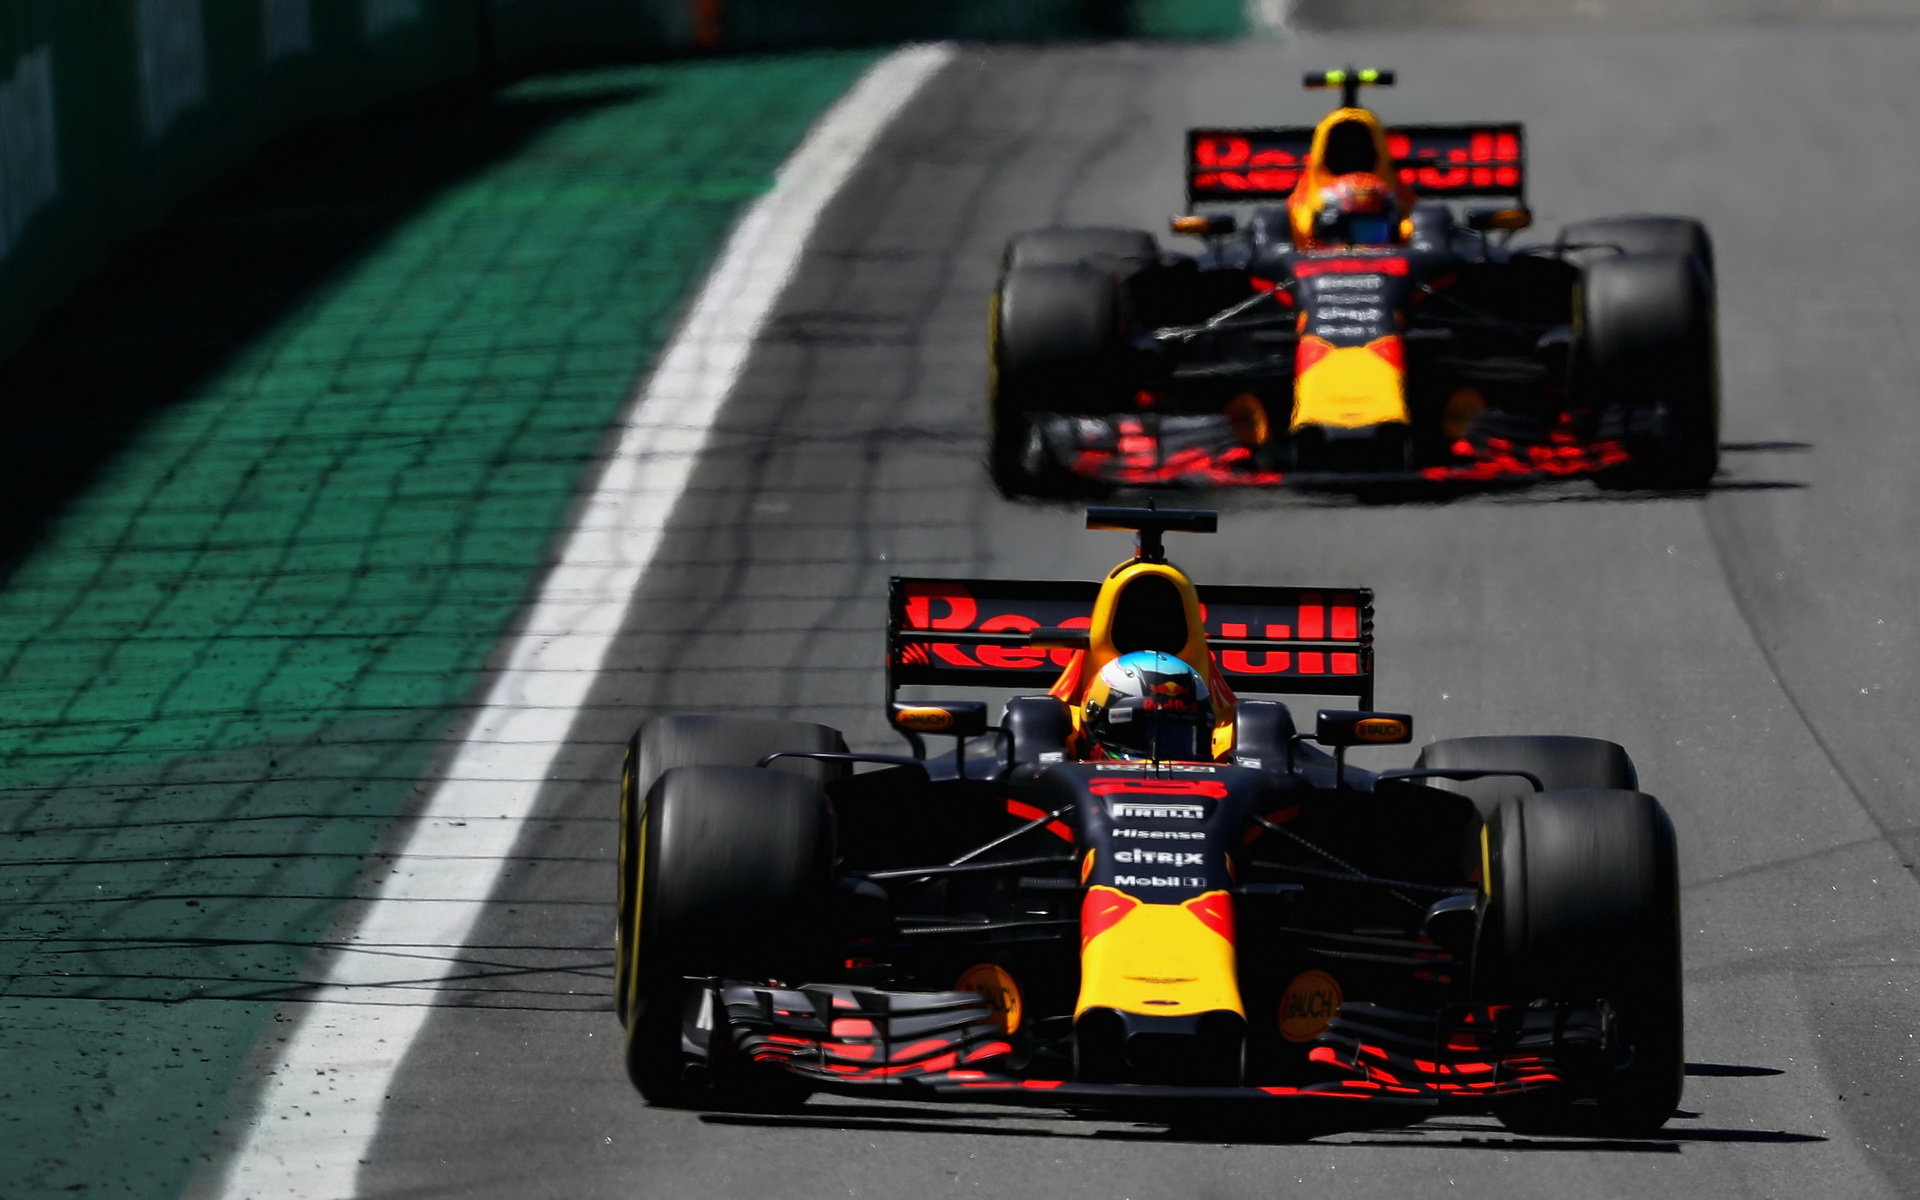 Daniel Ricciardo a Max Verstappen v závodě v Brazílii